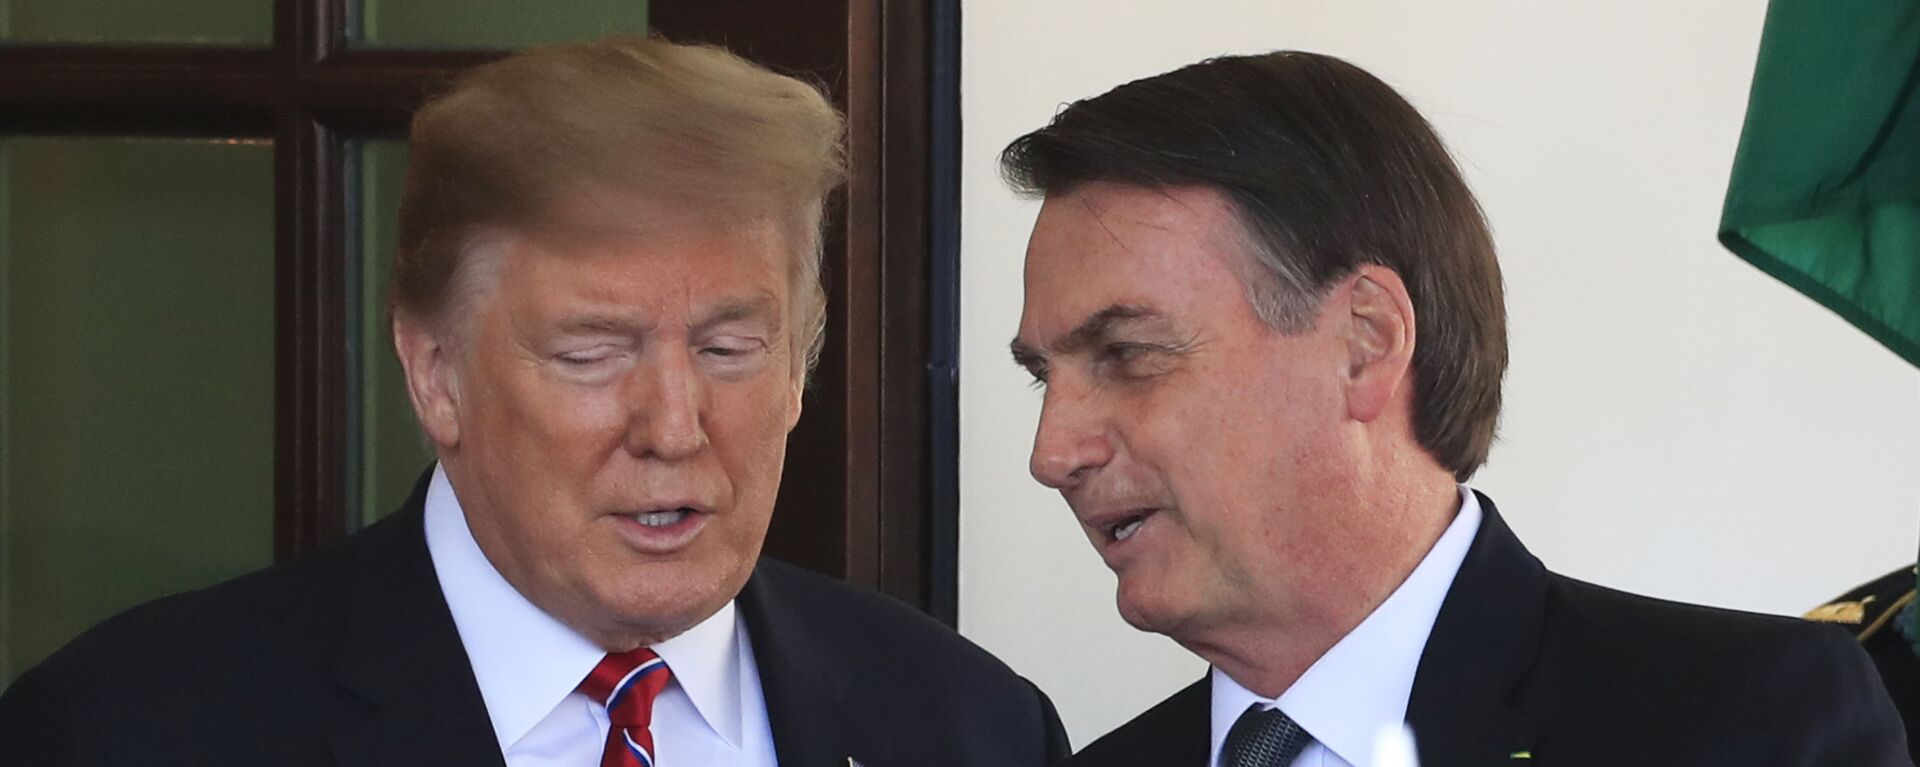 Donald Trump (à esquerda), então presidente dos Estados Unidos, e Jair Bolsonaro, presidente do Brasil, conversam na Casa Branca, em 19 de março de 2019 - Sputnik Brasil, 1920, 19.07.2022